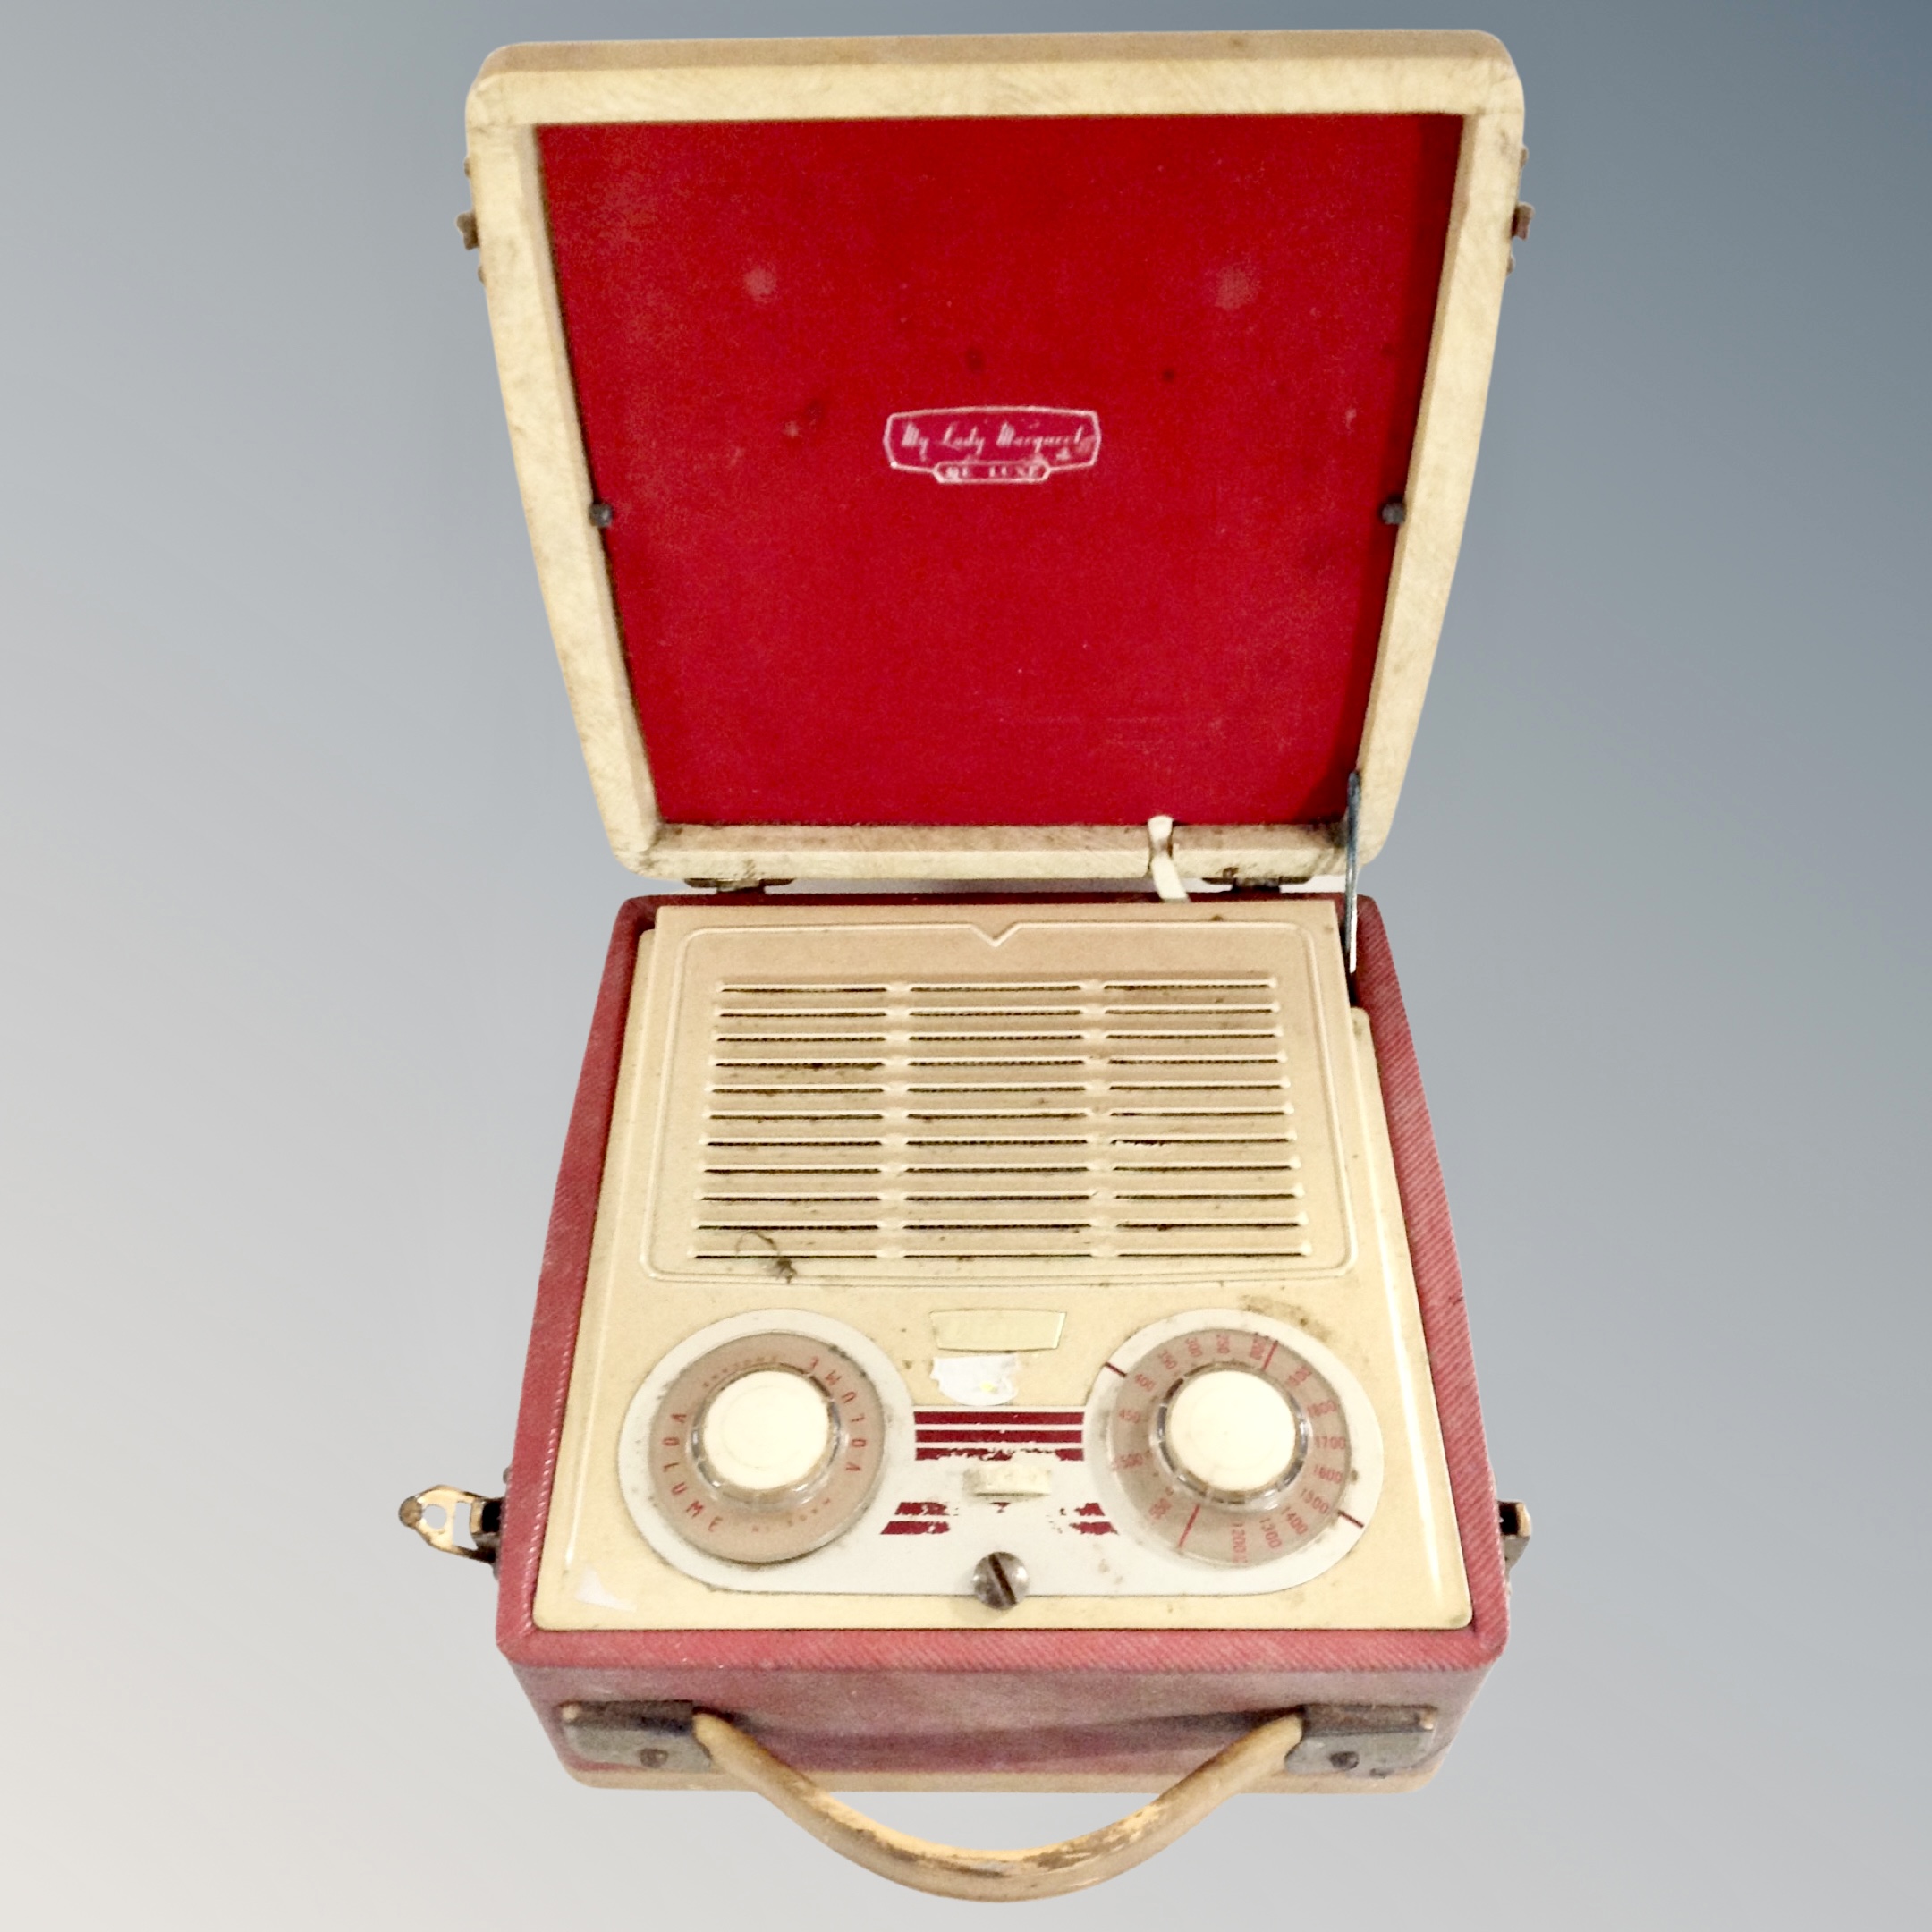 A Vidor Lady Margaret portable transistor radio.